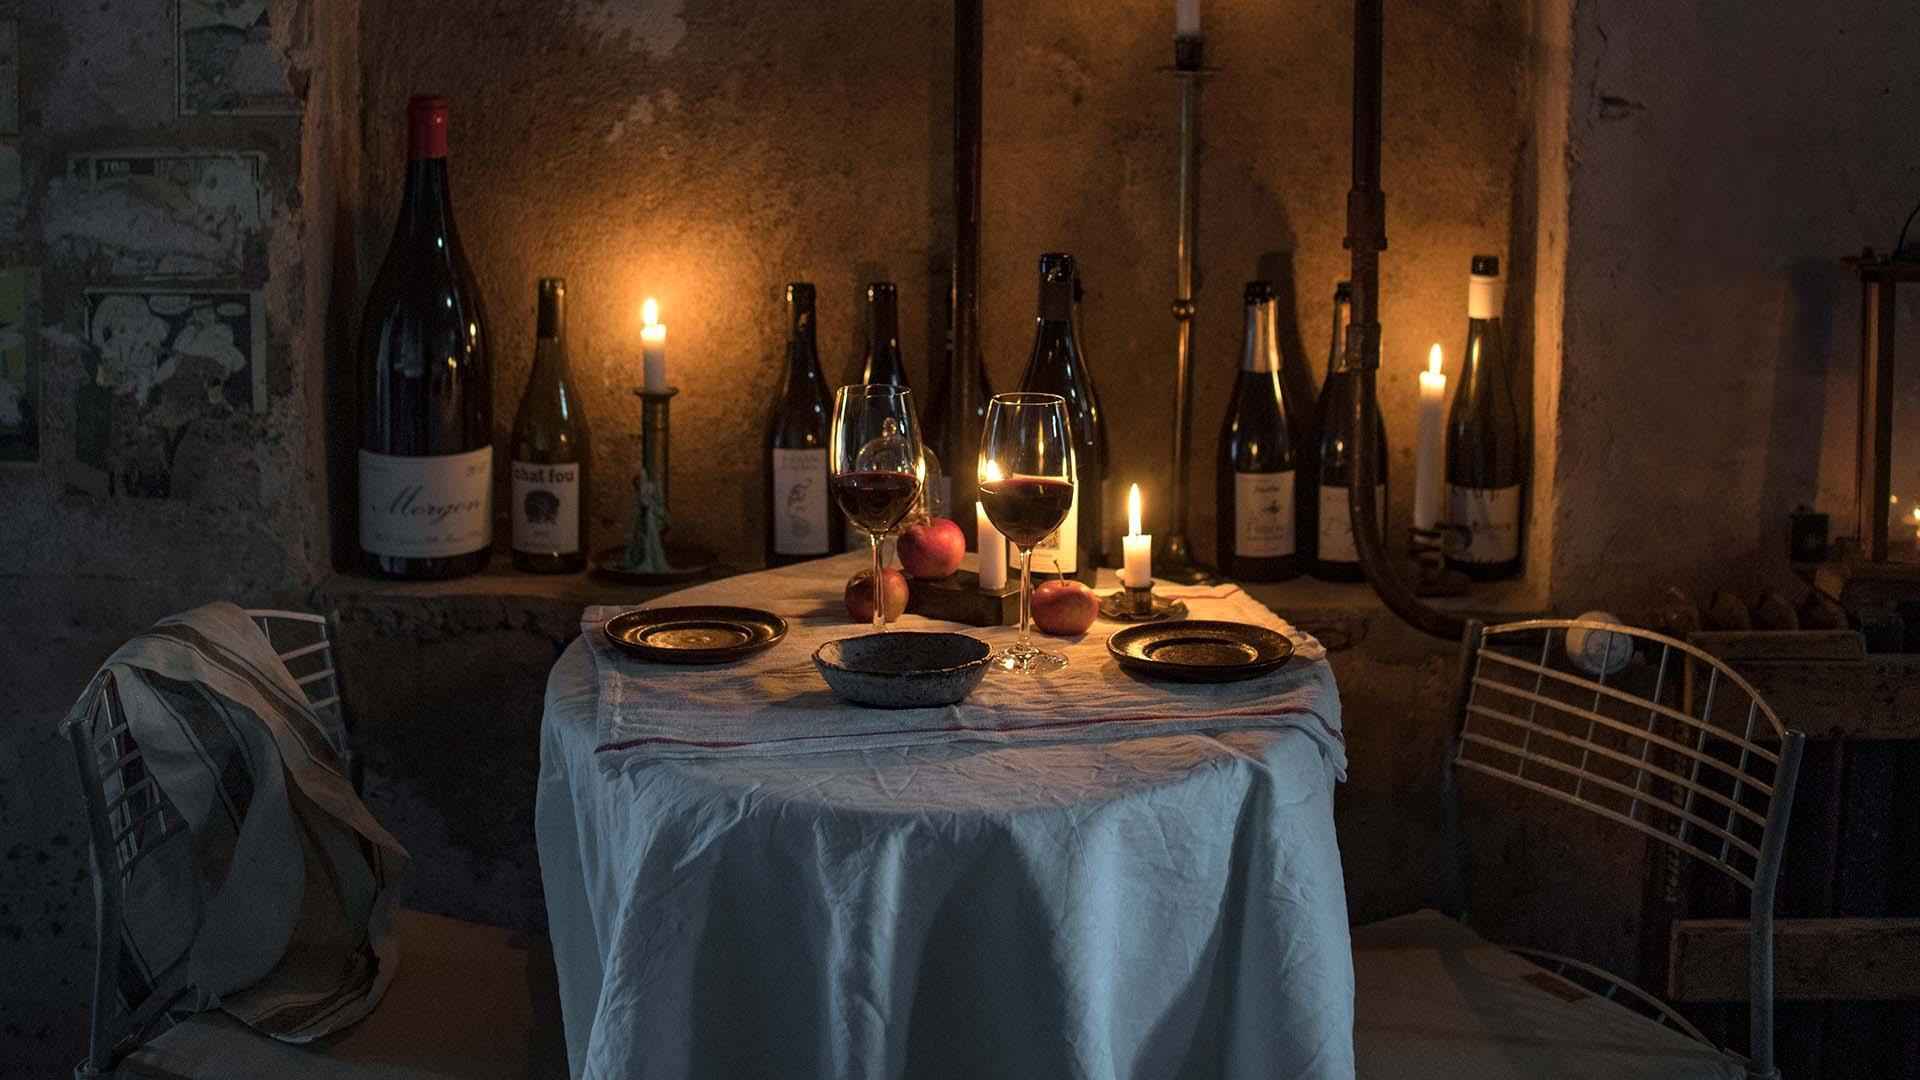 Une table pour deux personnes avec une nappe blanche, des assiettes et deux verres remplis de vin rouge. Le mur est décoré avec des bouteilles de vin vides et des bougies allumées.